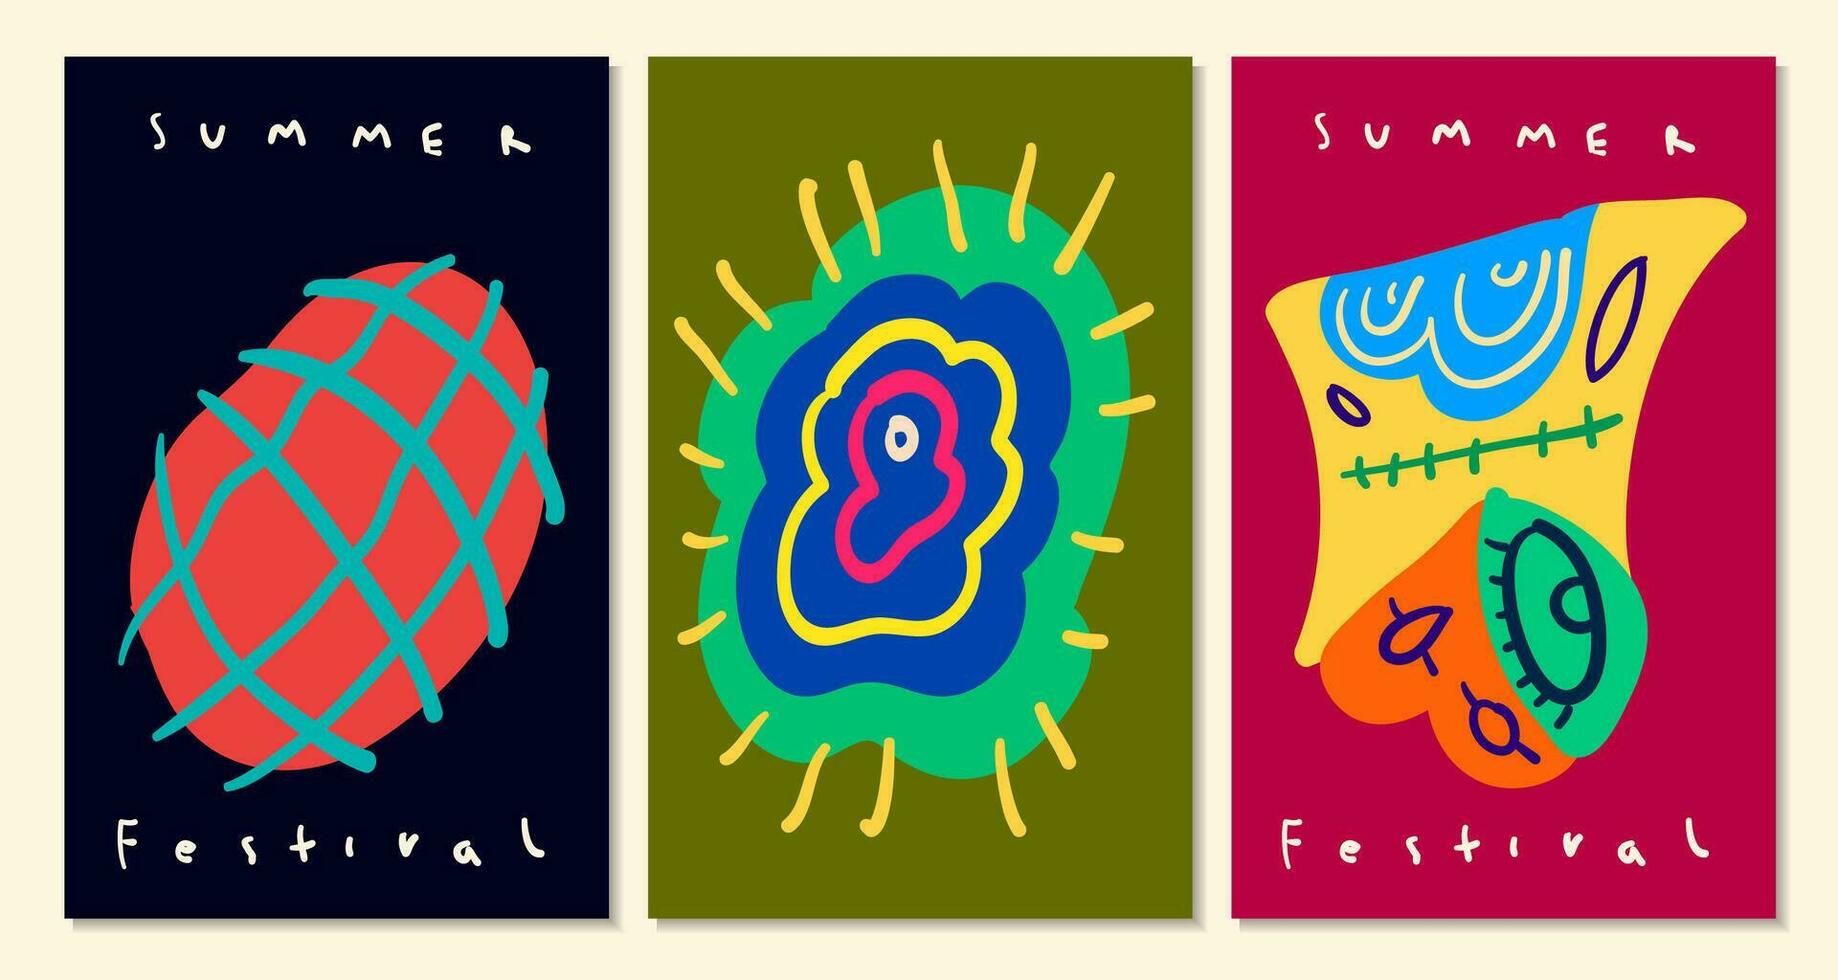 kleurrijk abstract etnisch patroon illustratie voor zomer vakantie banier en poster vector